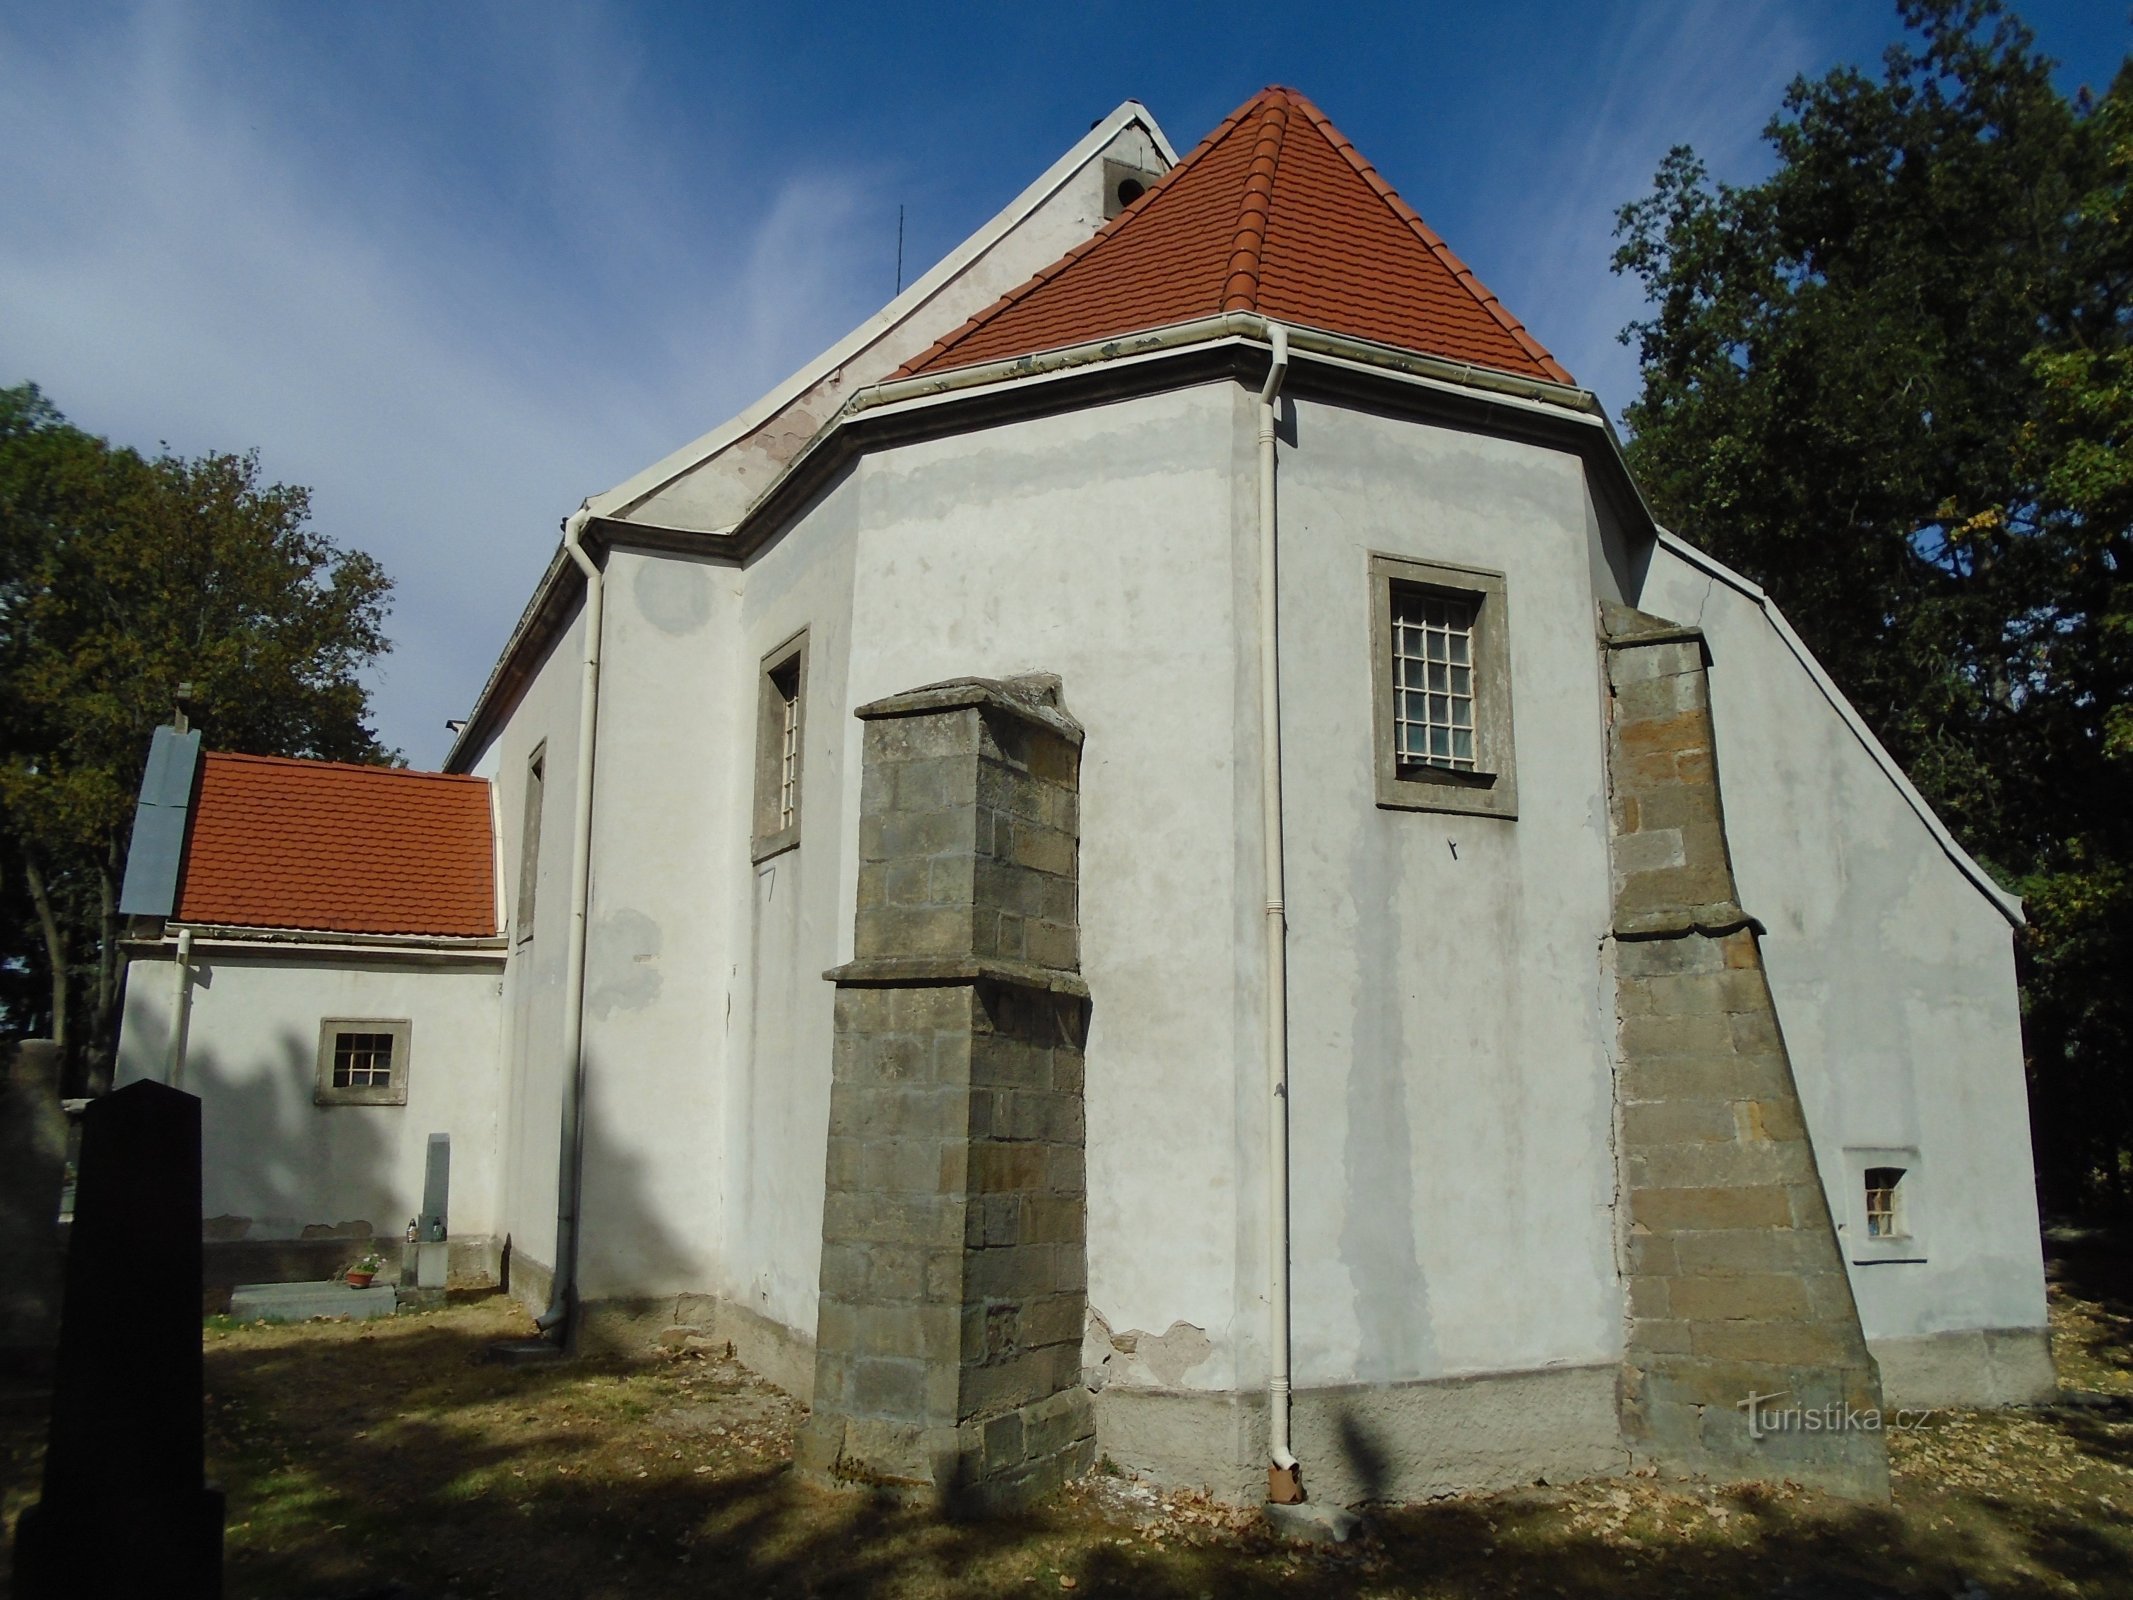 Pyhän kirkko Wenceslas (Habřina, 9.9.2018. kesäkuuta XNUMX)